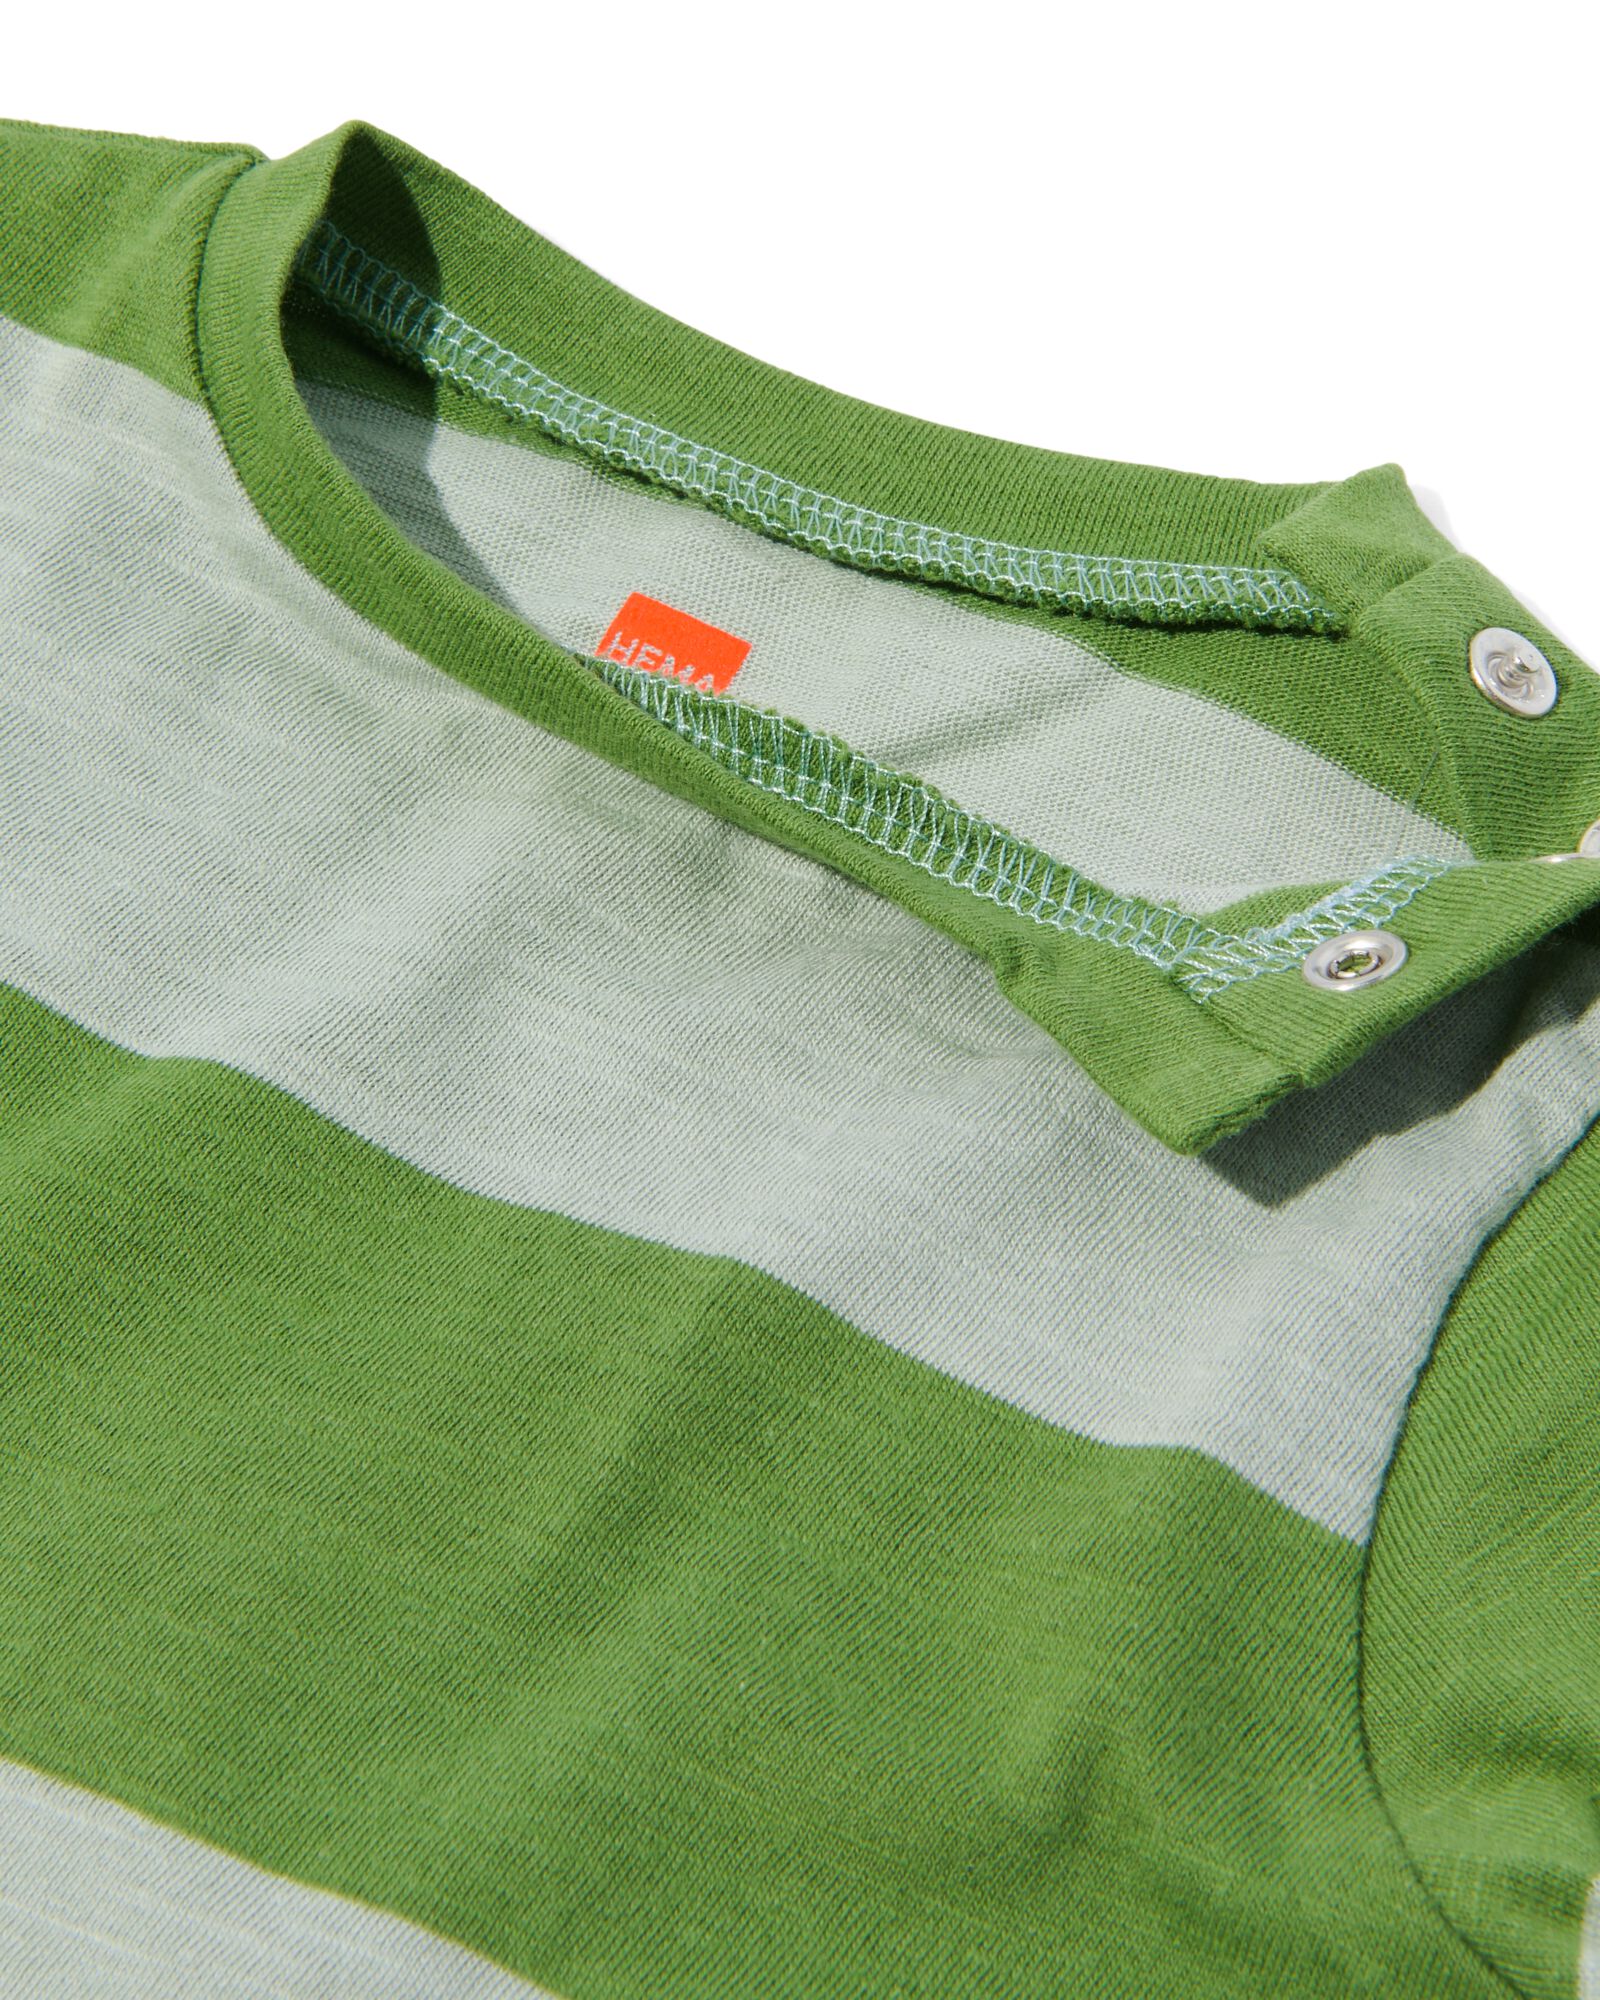 t-shirt bébé à rayures vert vert - 33179140GREEN - HEMA